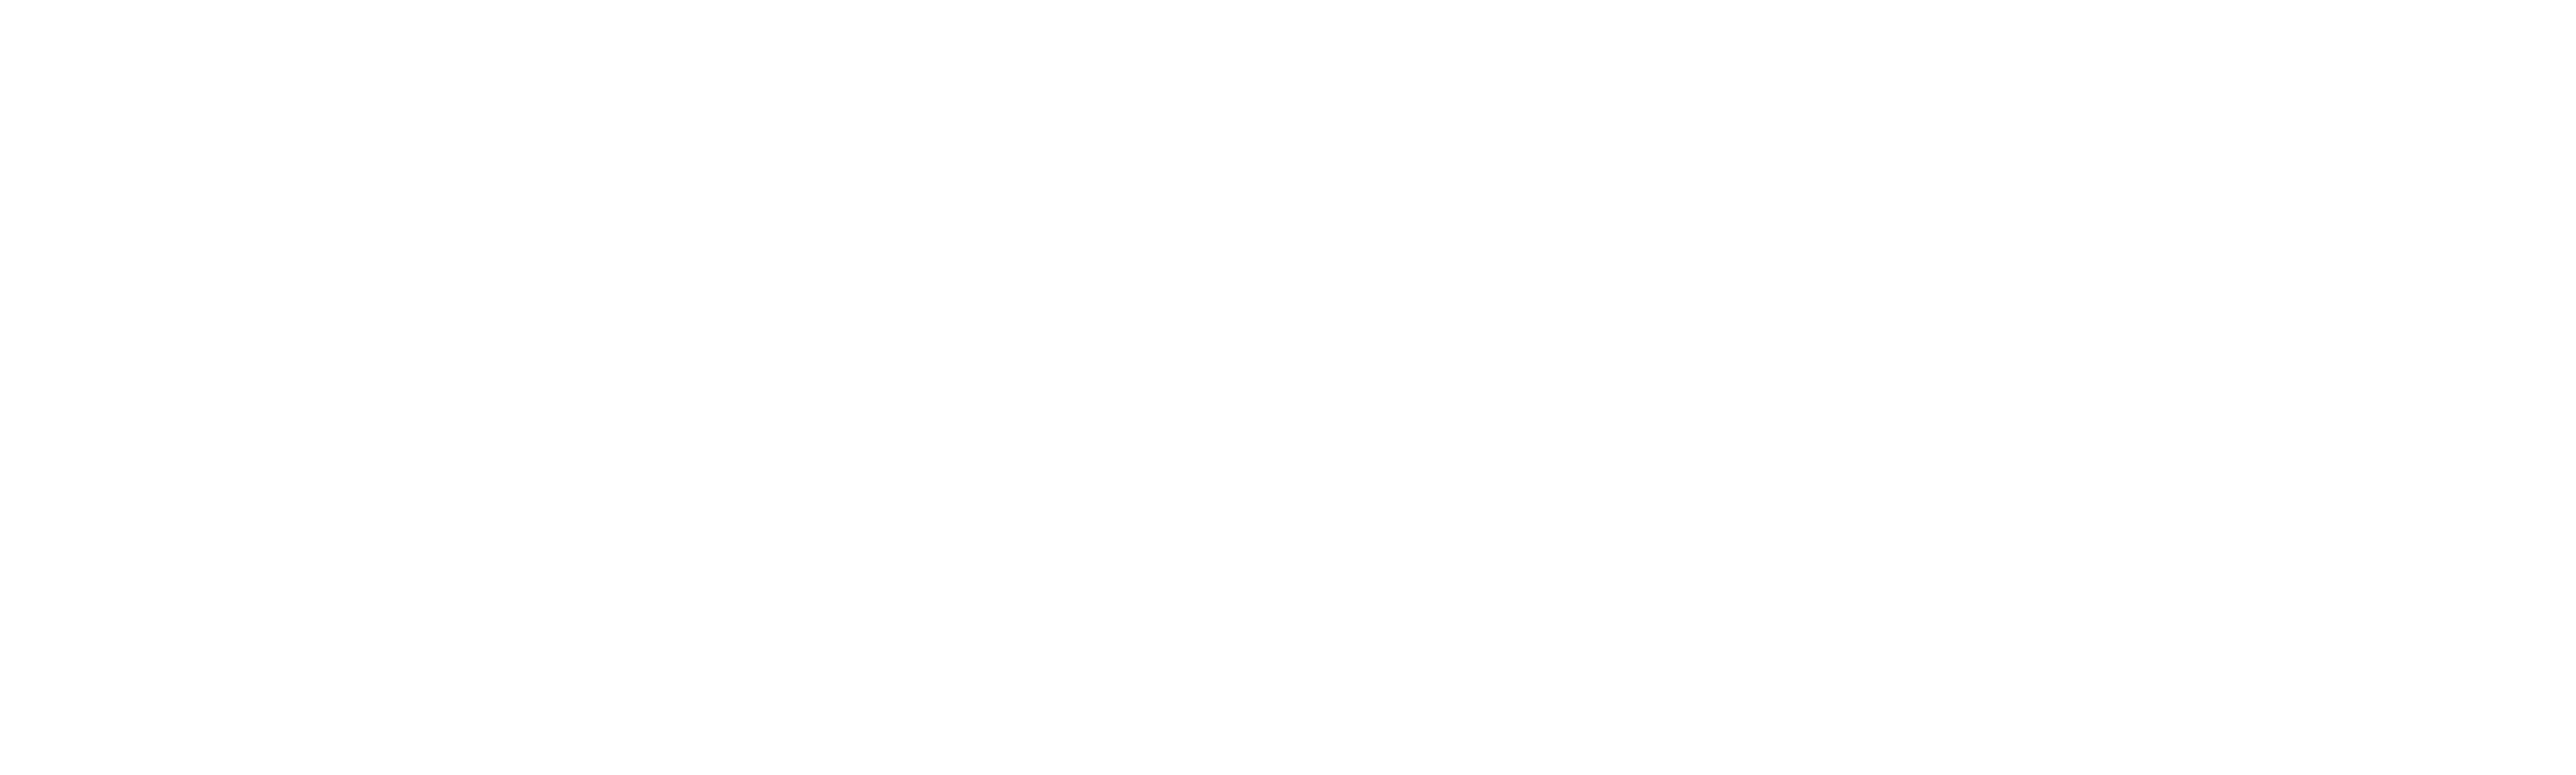 logo nerobi indie game